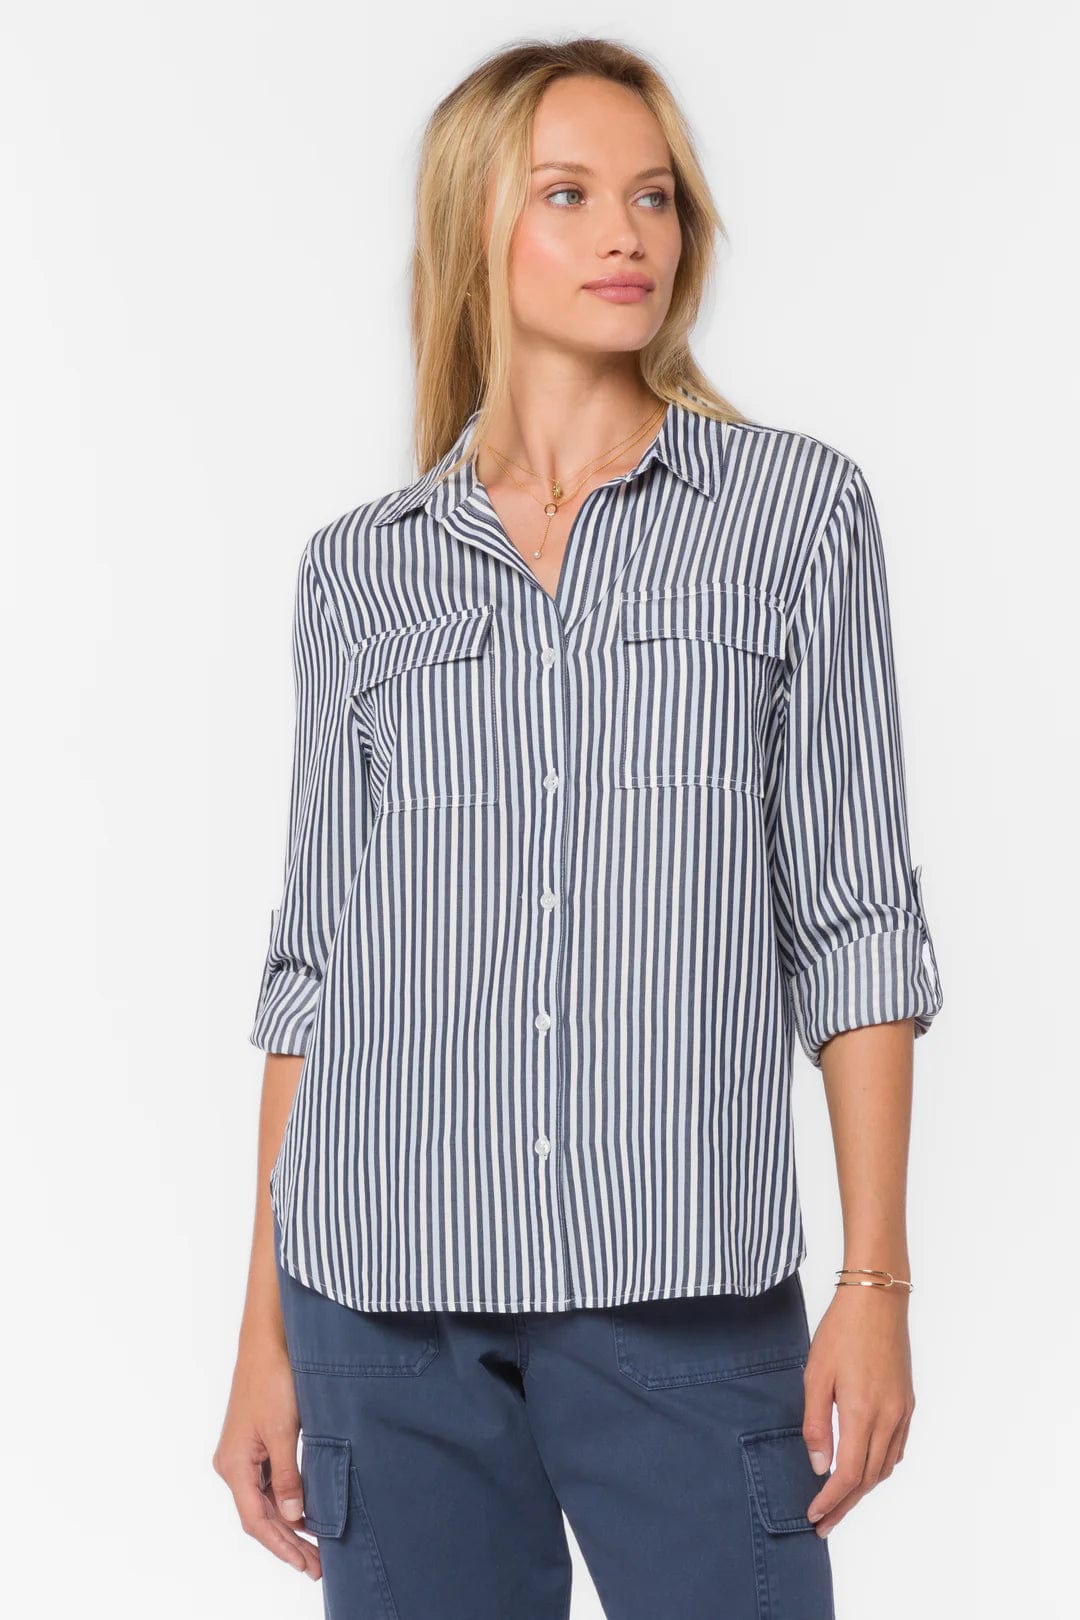 Velvet Heart Talma Shirt Navy Stripe